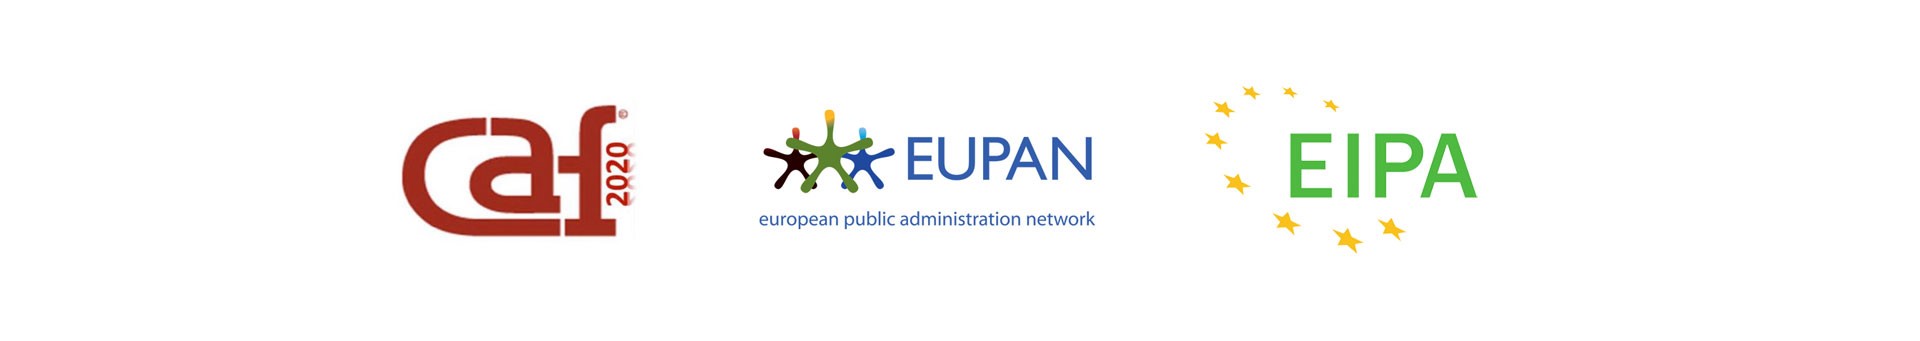 logo modelu CAF, logo Európskej siete verejnej správy a logo Európskeho inštitútu pre verejnú správu